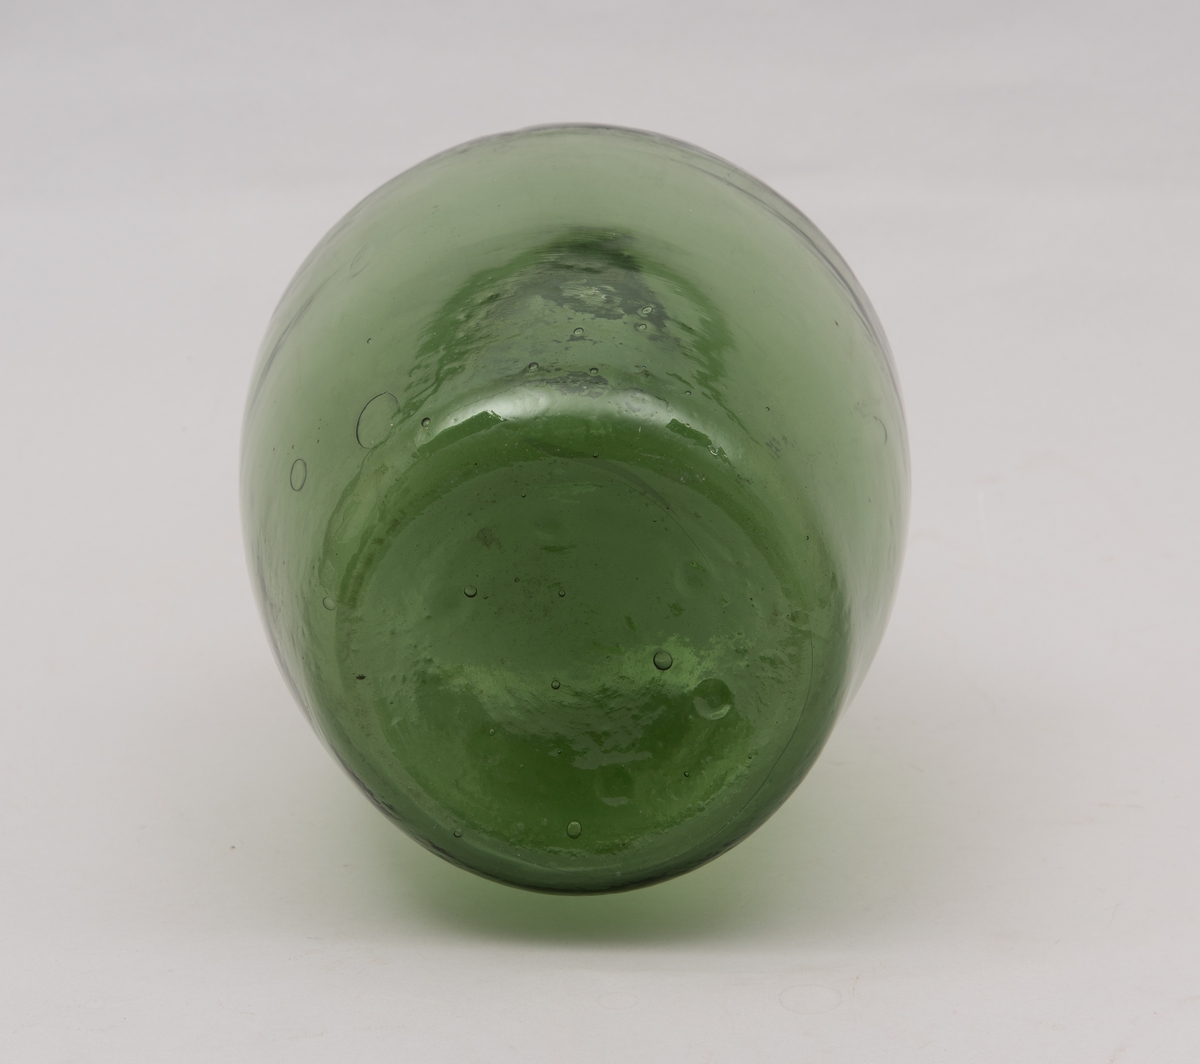 Grønn ballongformet flaske av glass.